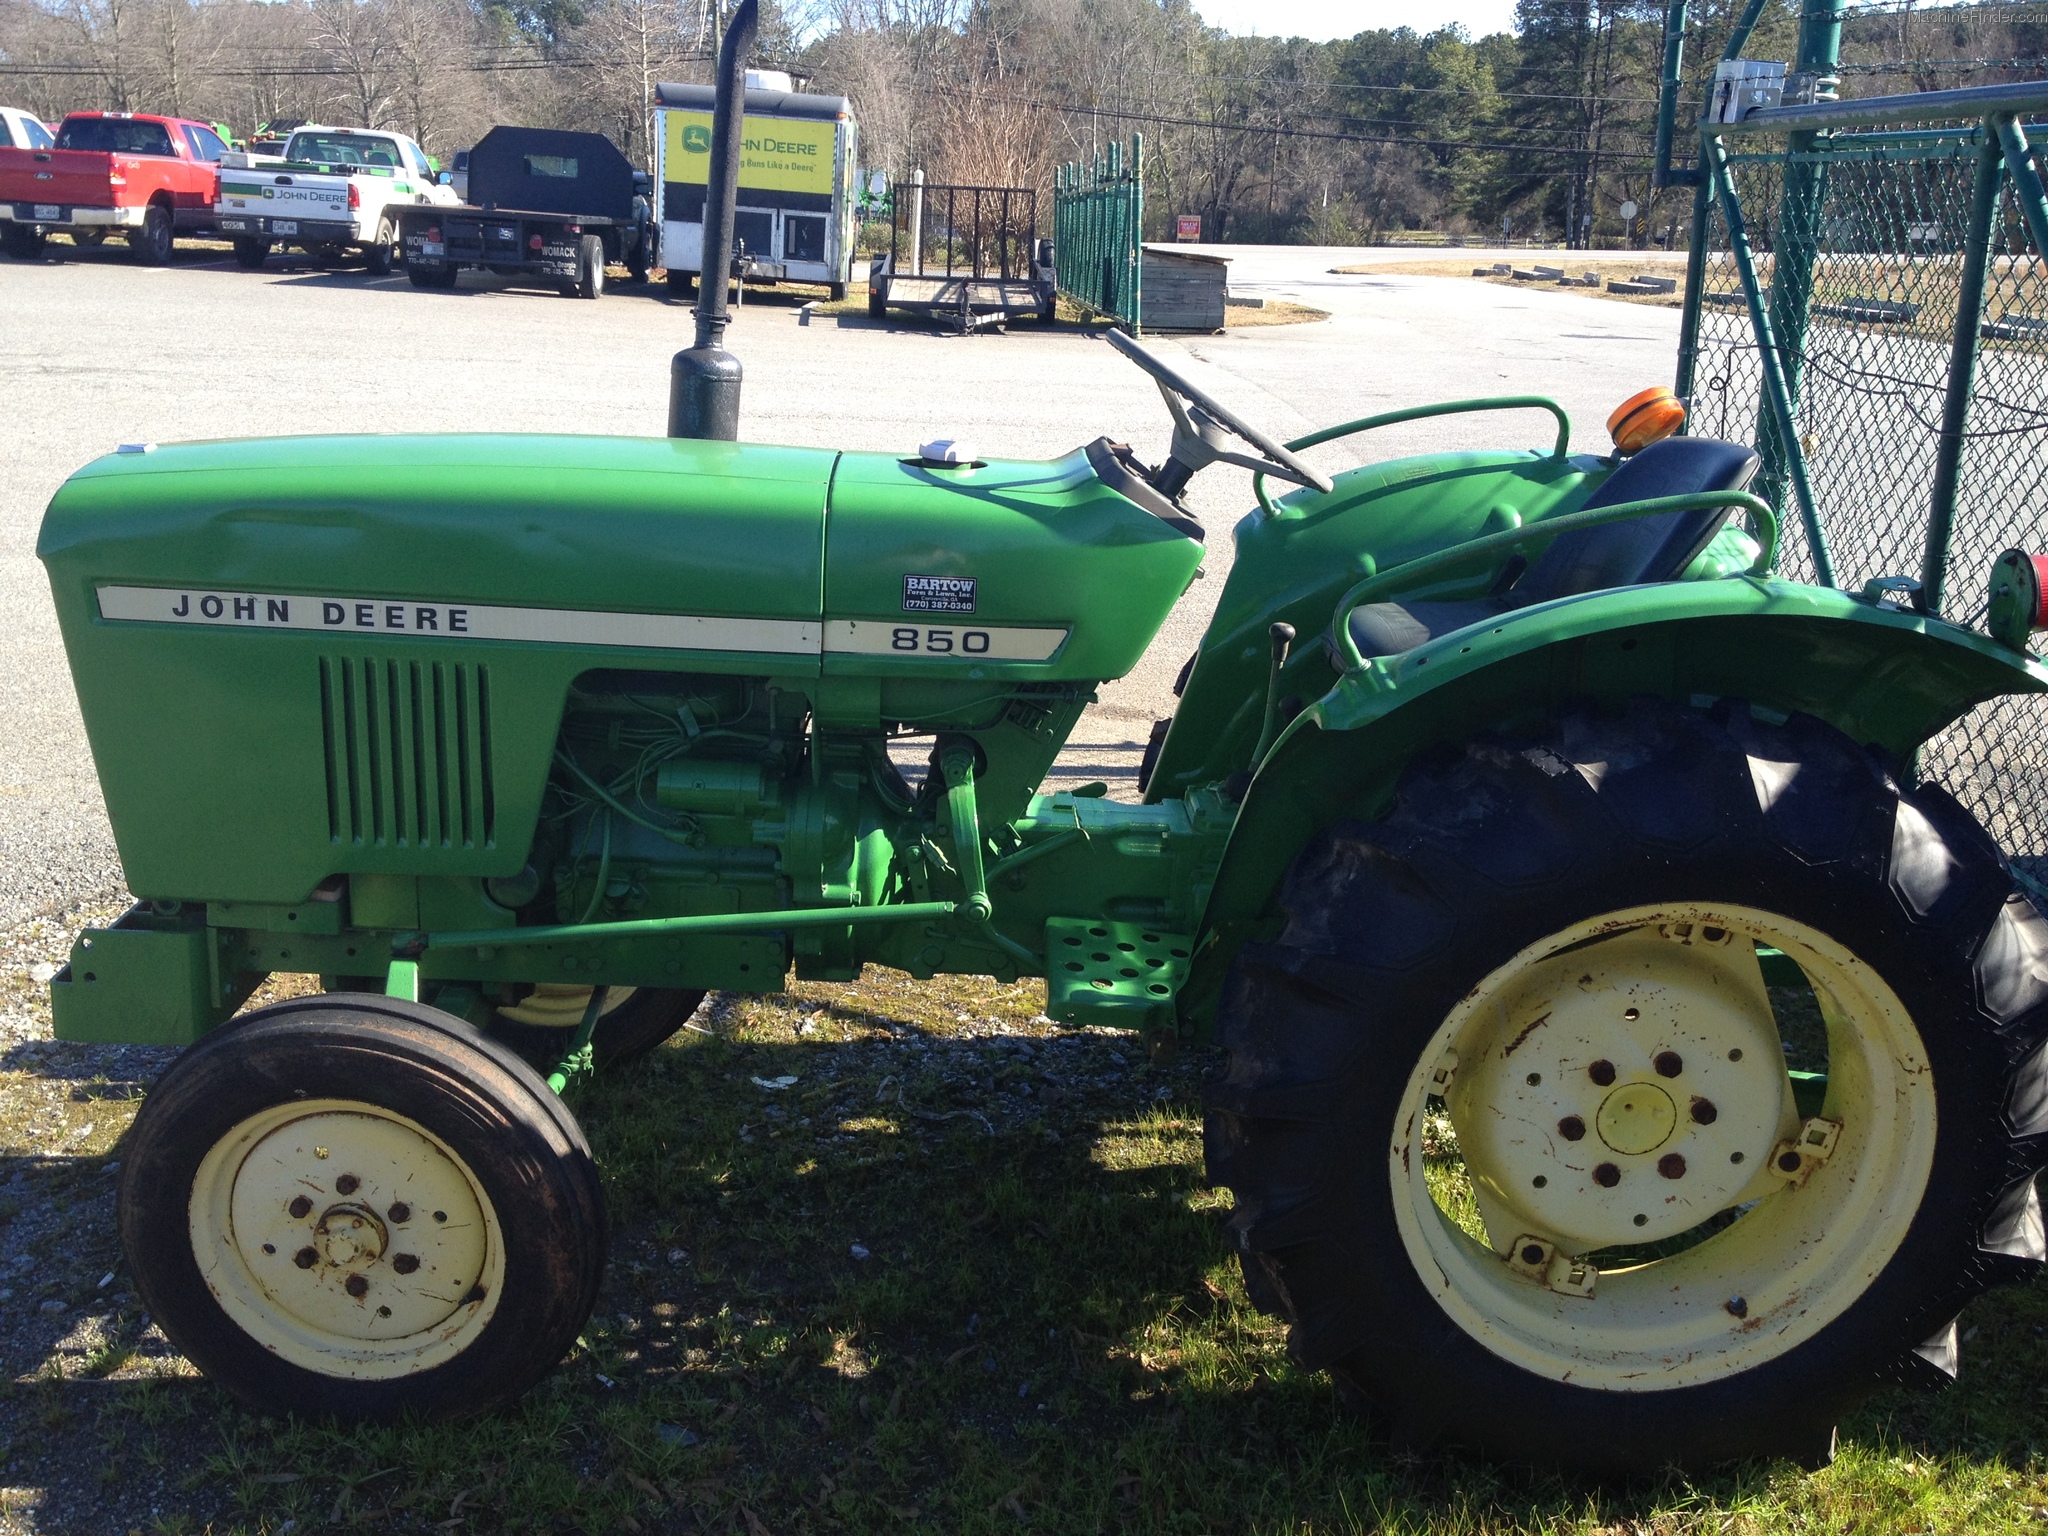 John Deere 850 tractor Tractors - Compact (1-40hp.) - John Deere ...